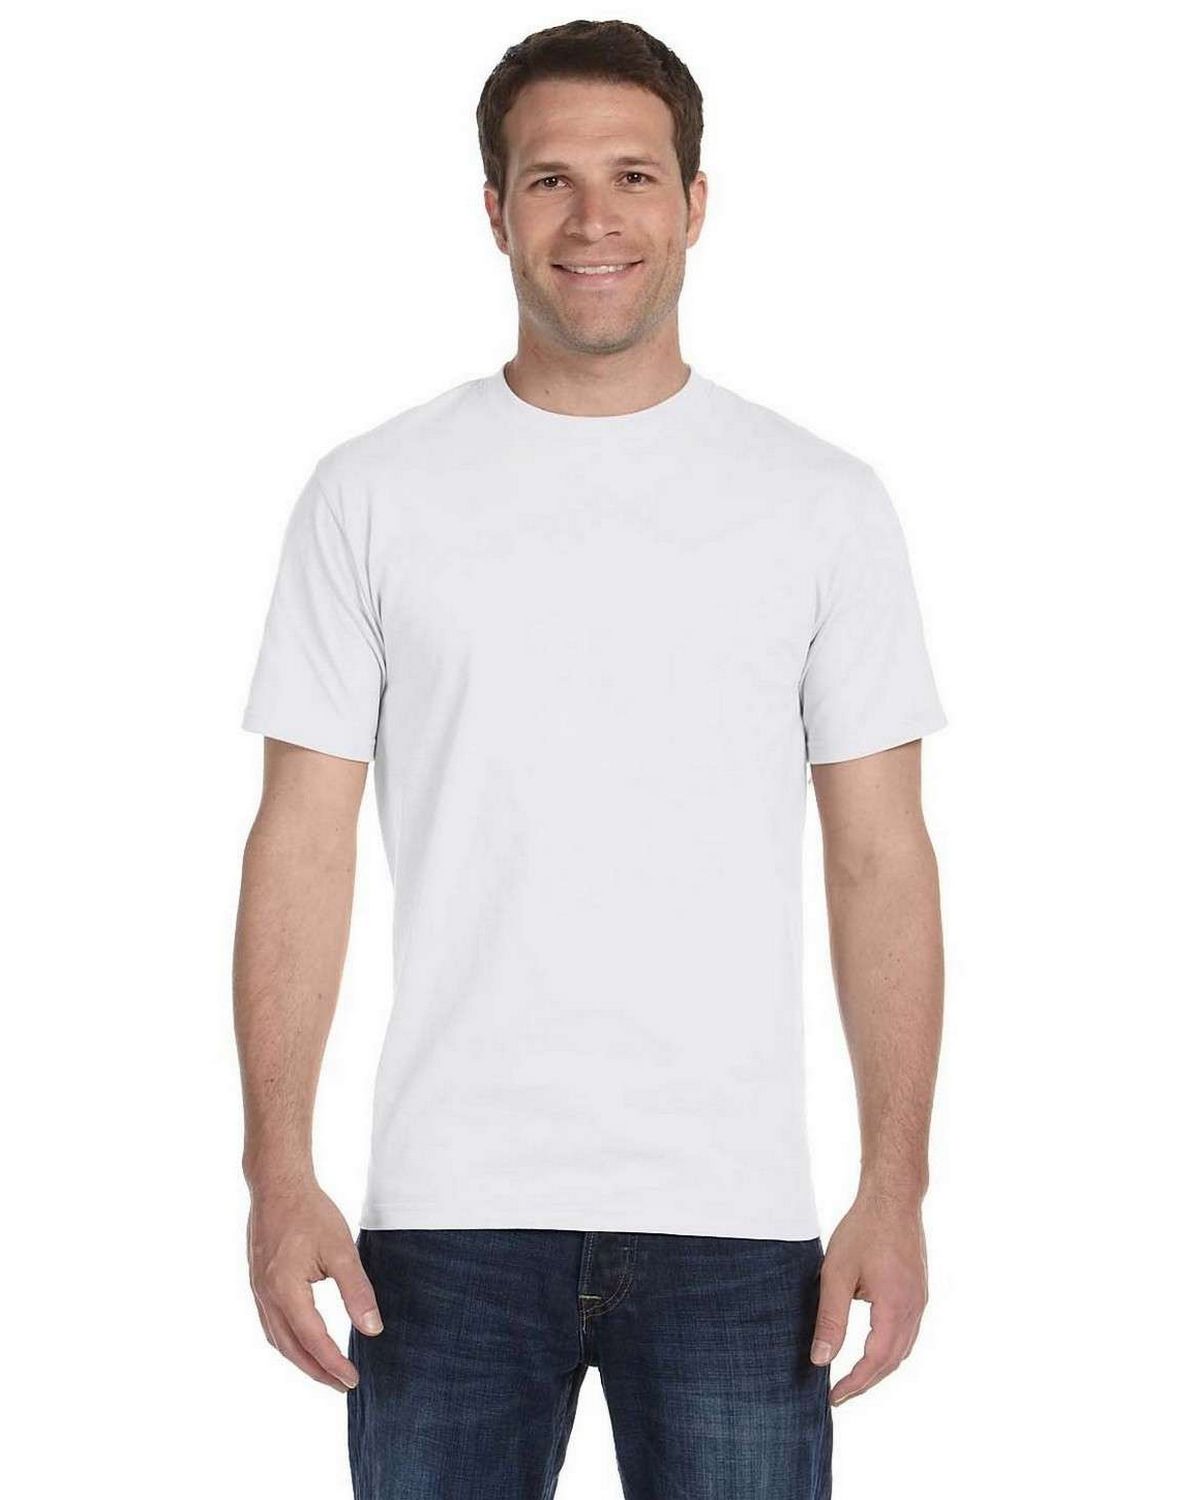 plade Såkaldte Vanvid Hanes 5280 100% Comfort Soft Cotton T Shirt